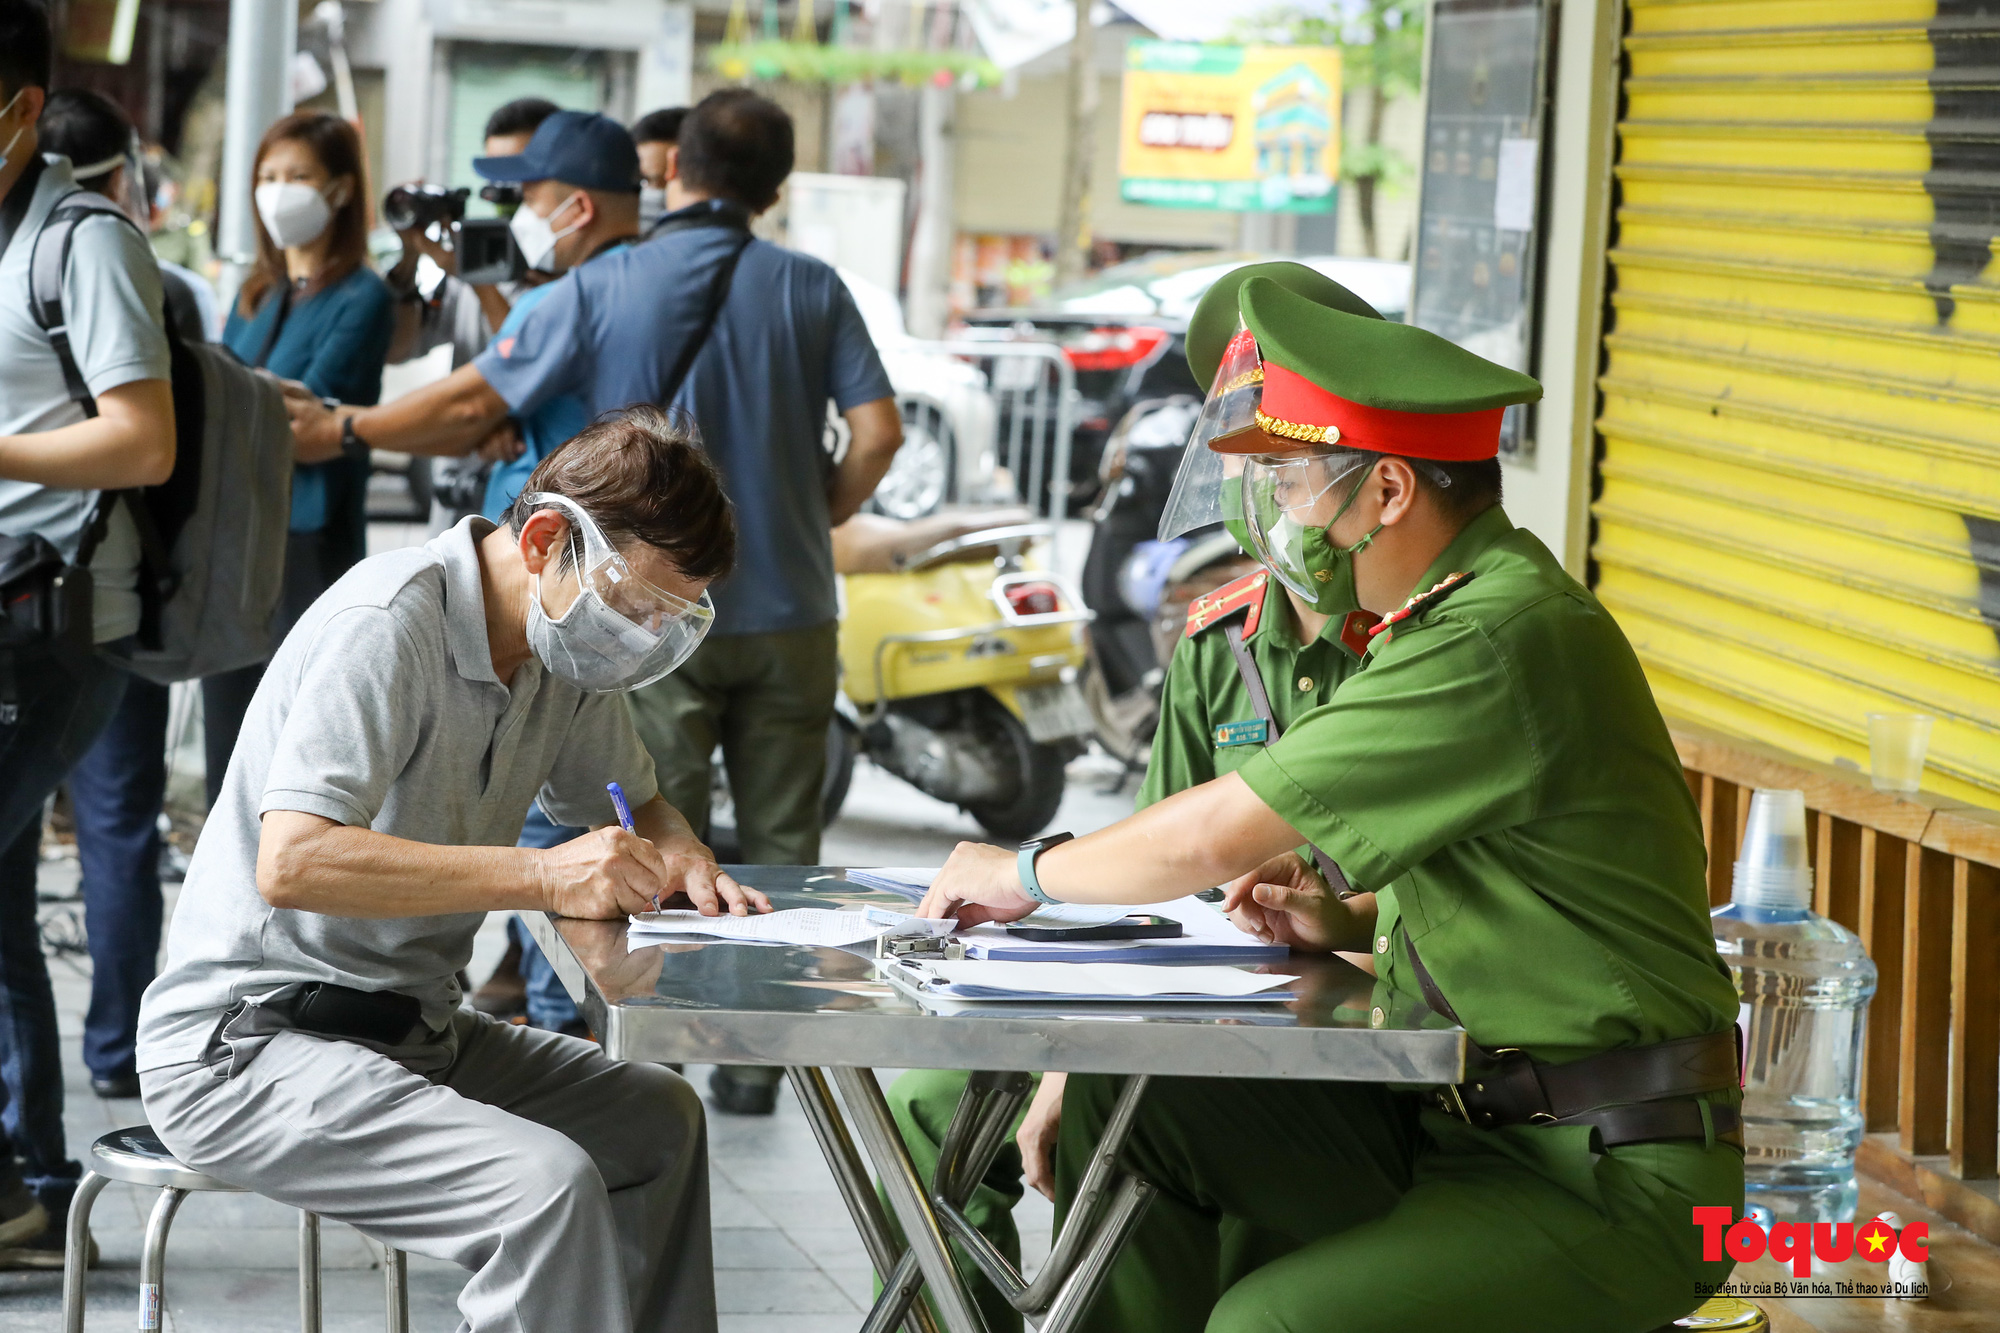 Công an quận Hoàn Kiếm triển khai tổ công tác đặc biệt kiểm soát giấy đi đường, nhiều trường hợp quay đầu bỏ chạy - Ảnh 17.